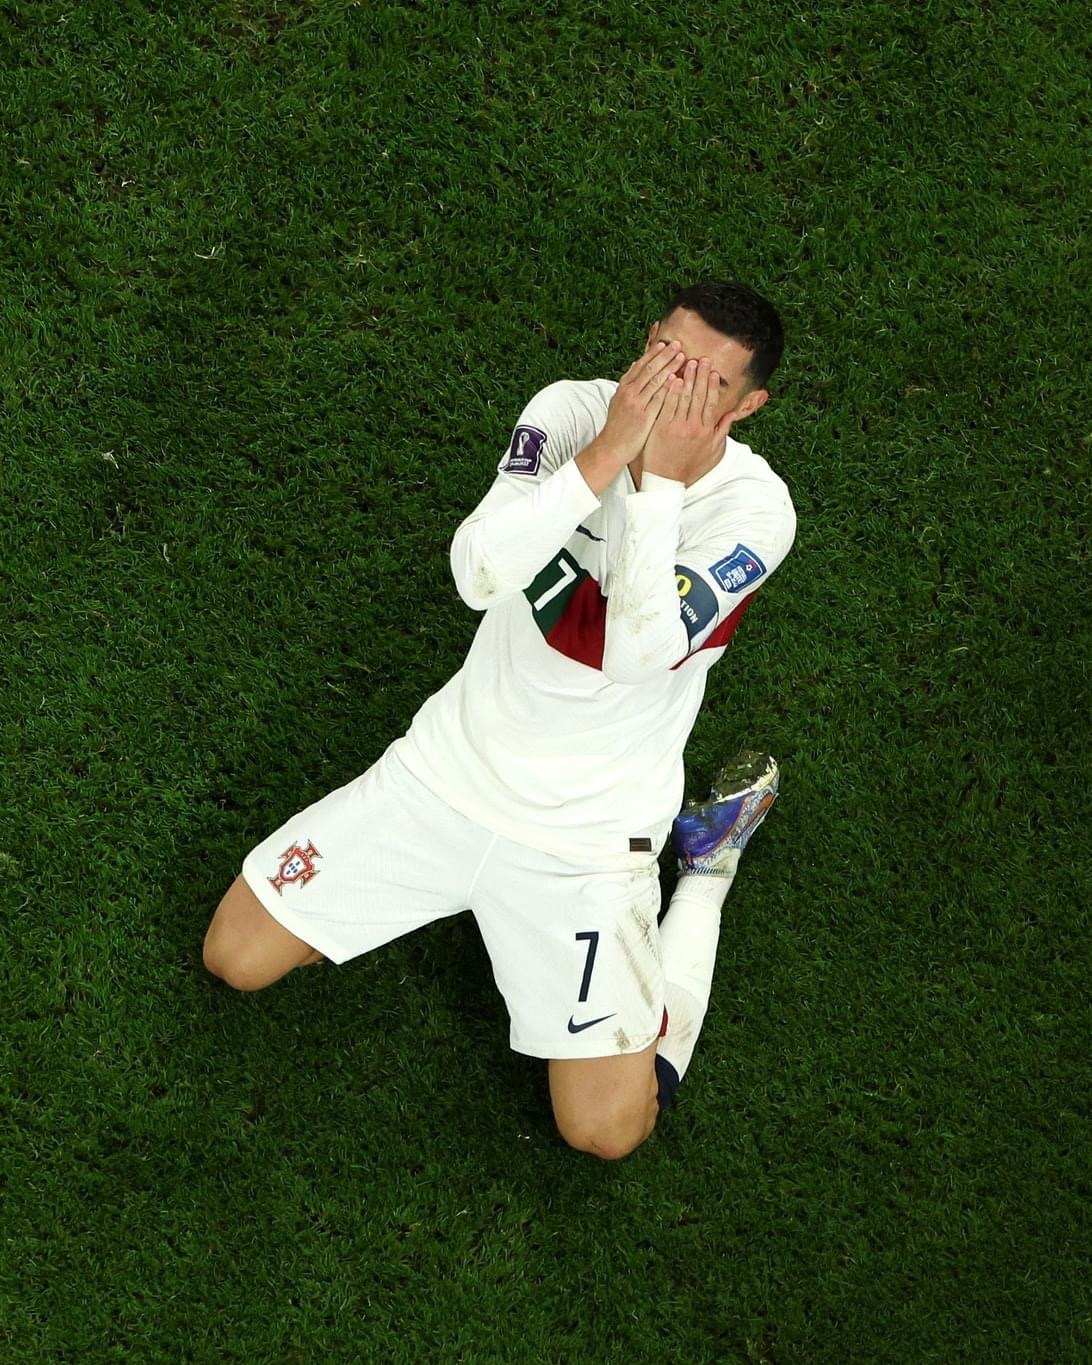 Hãy thưởng thức bức ảnh Ronaldo khóc sau khi giành chức vô địch Euro 2016, chứng kiến niềm hạnh phúc và cảm xúc sâu trong con người anh.